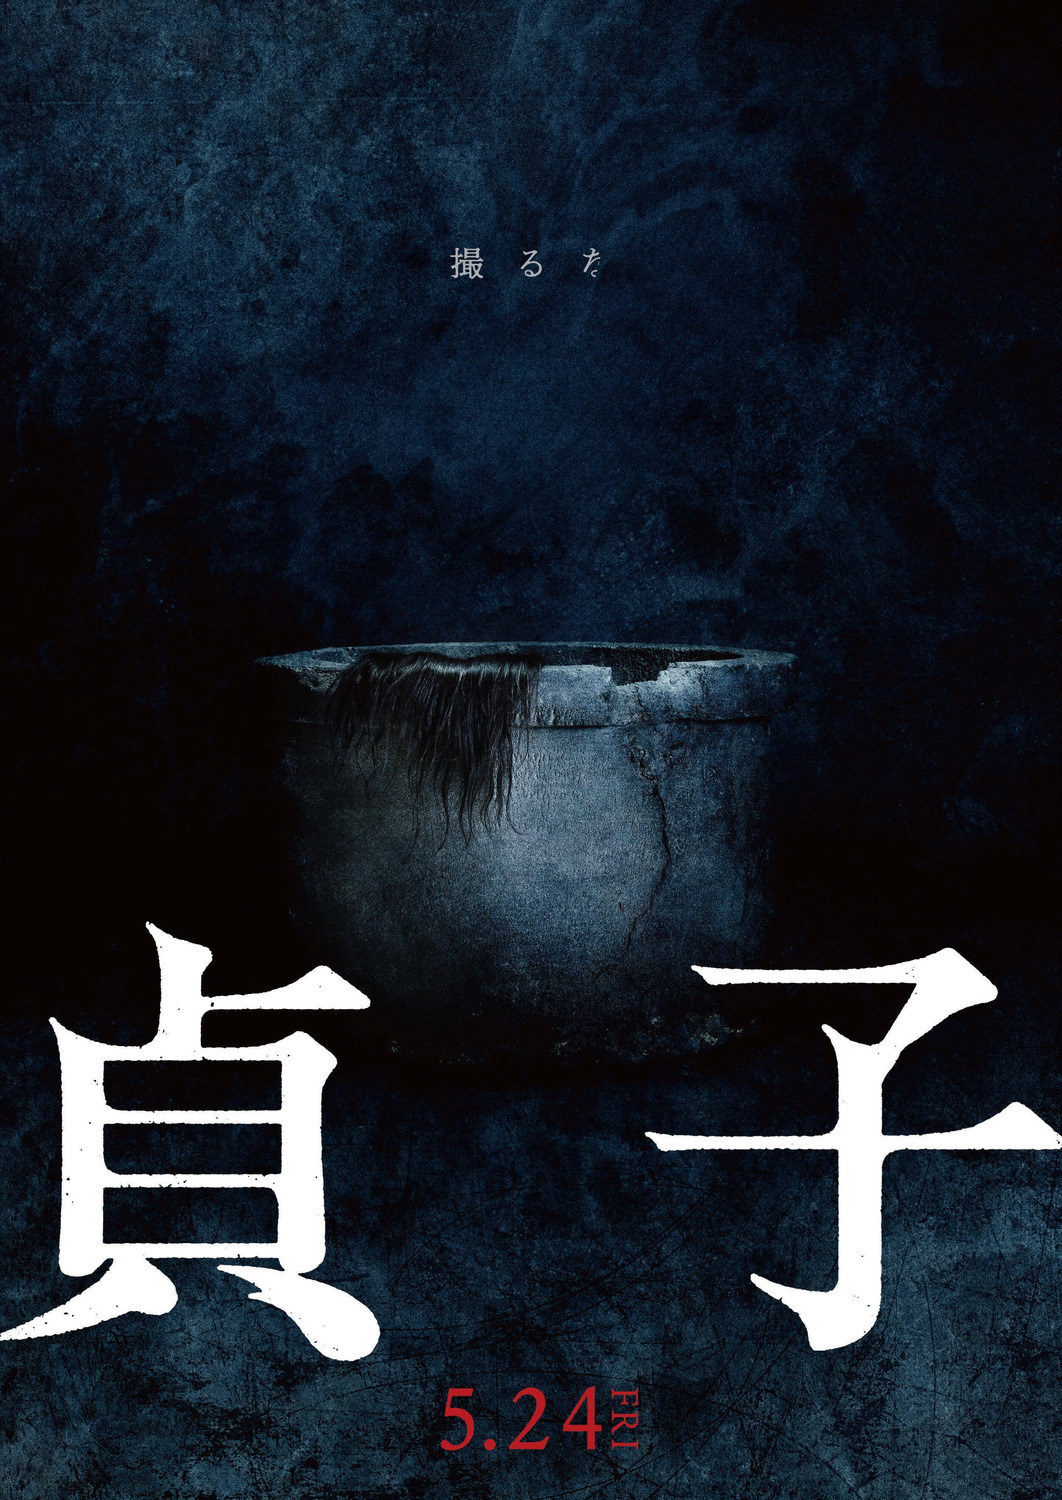 Extra Large Movie Poster Image for Sadako 